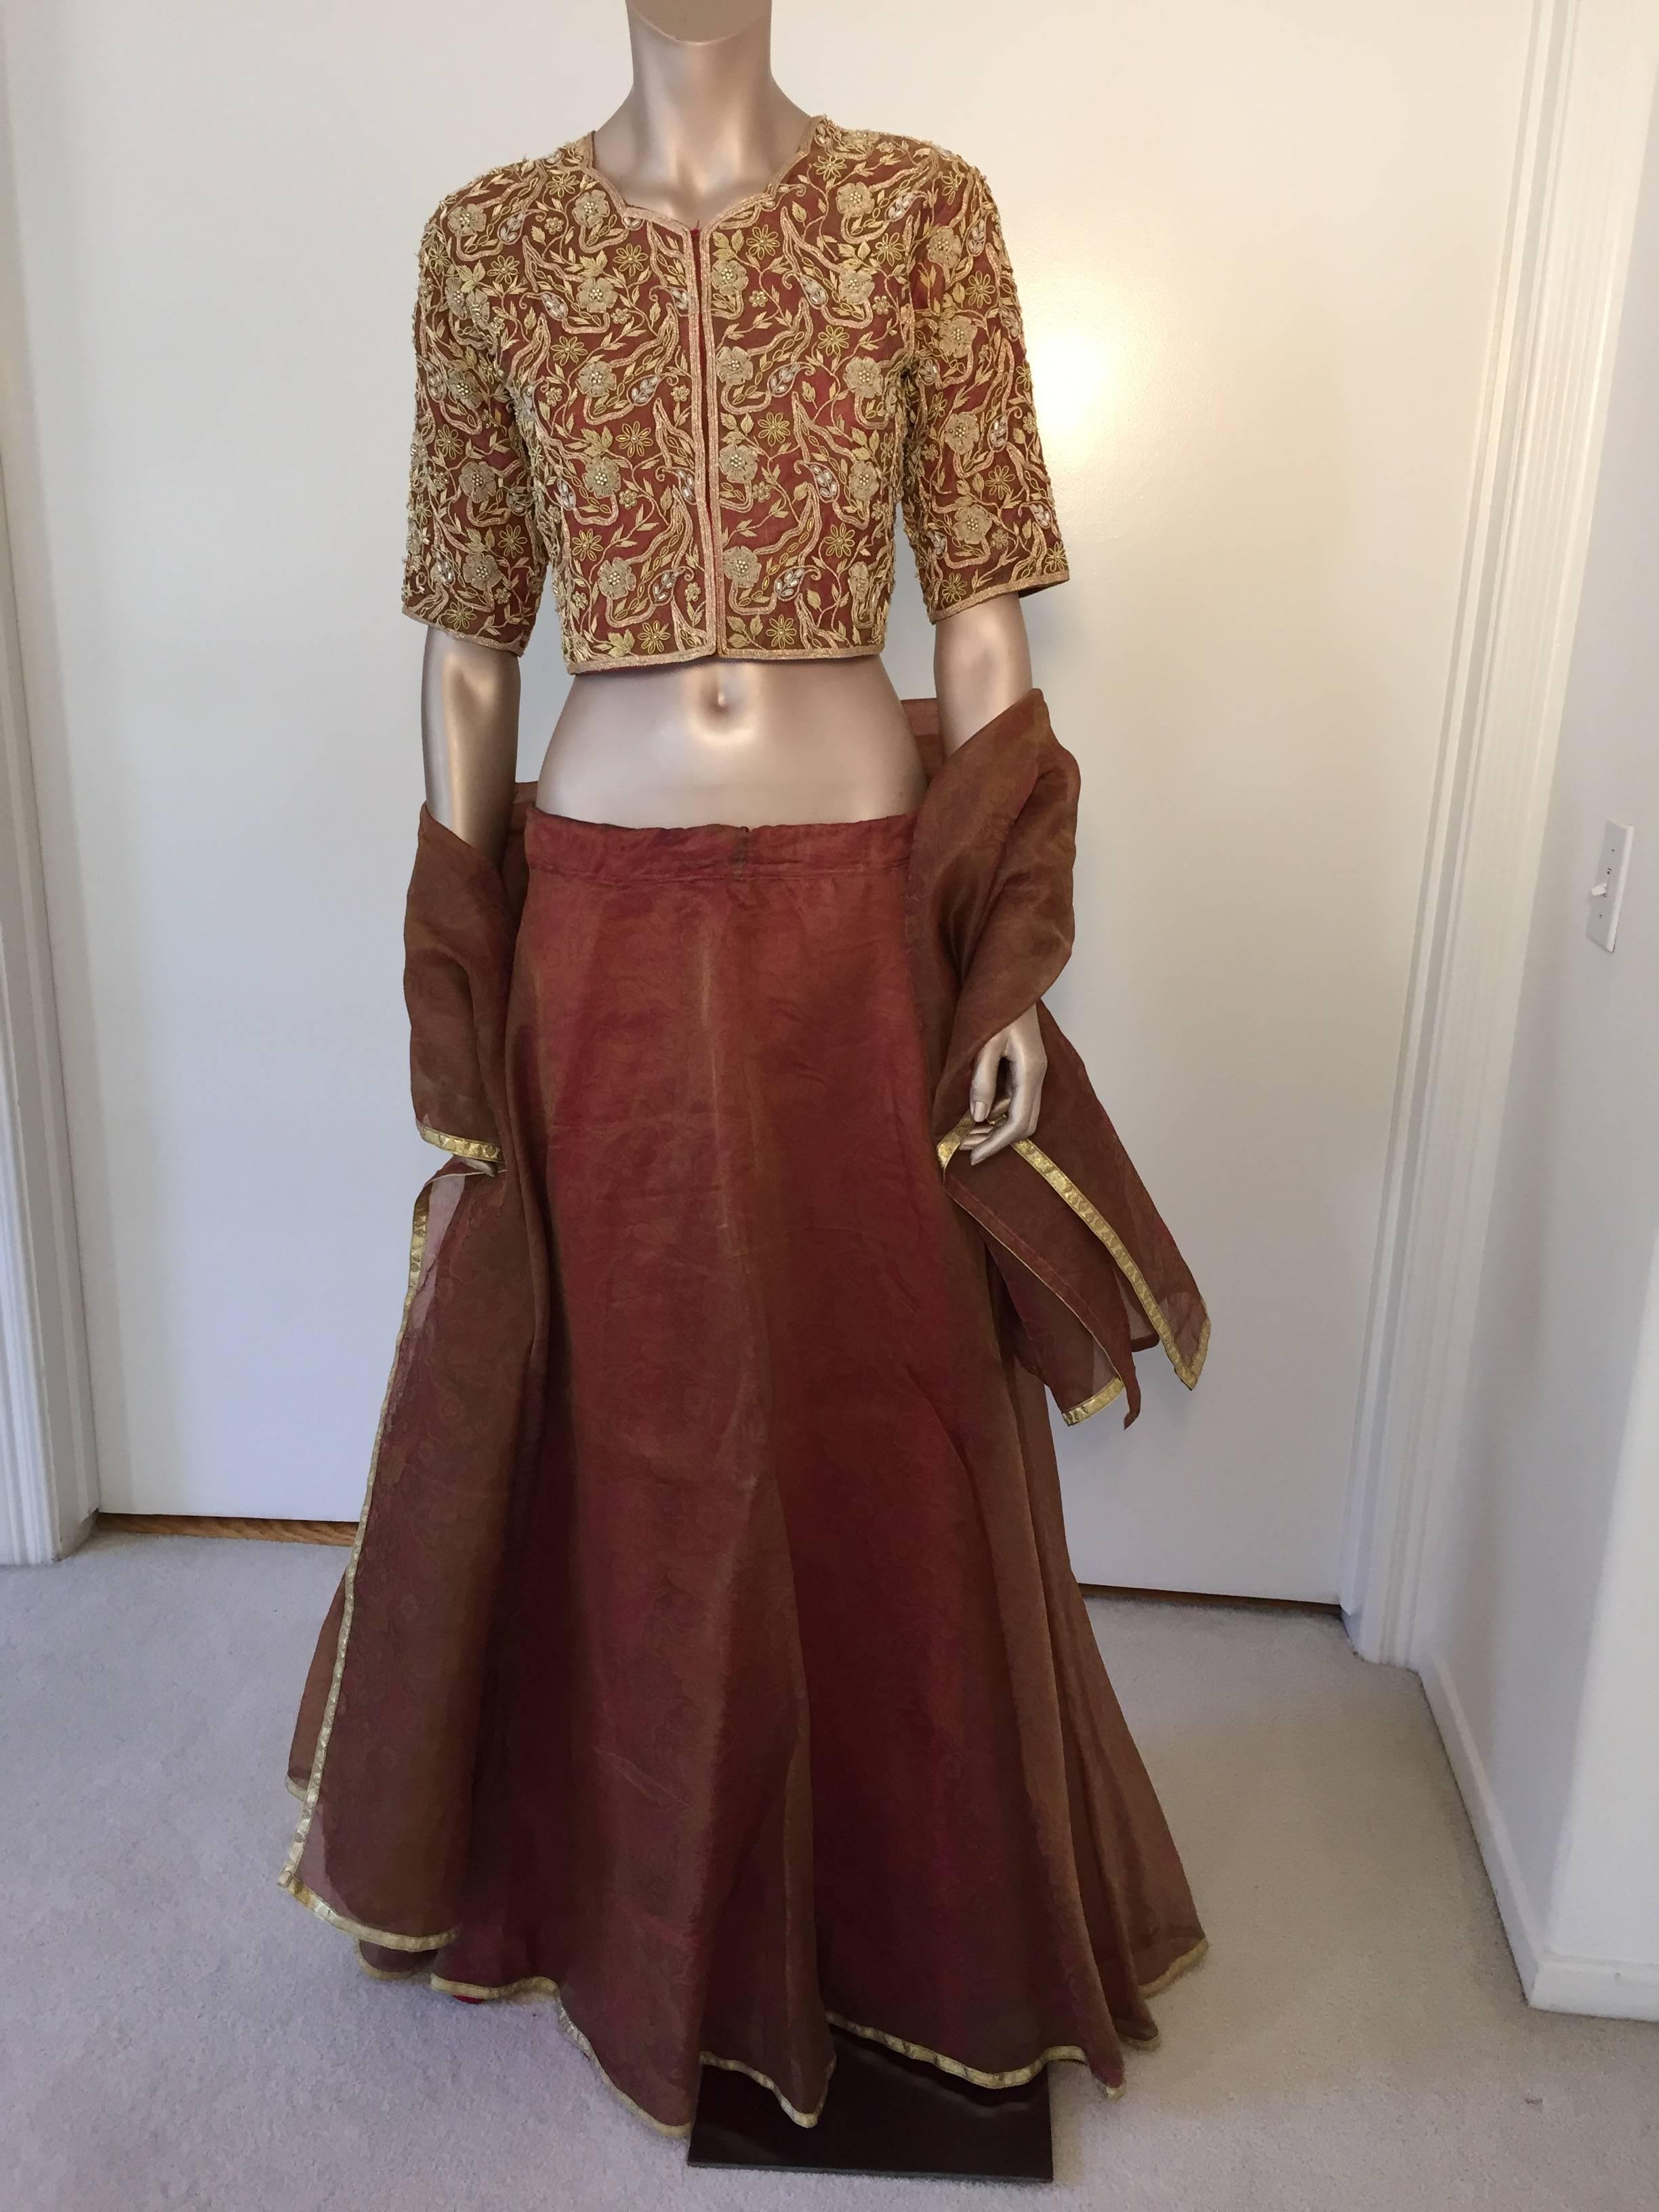 Superbe sari vintage en soie de la star de Bollywood, conçu sur mesure et perlé.
Blouse en brocart de grande classe, brodée de fils métalliques et de perles 
un vaste travail de perles, d'appliques et d'embellissements avec un véritable trésor de